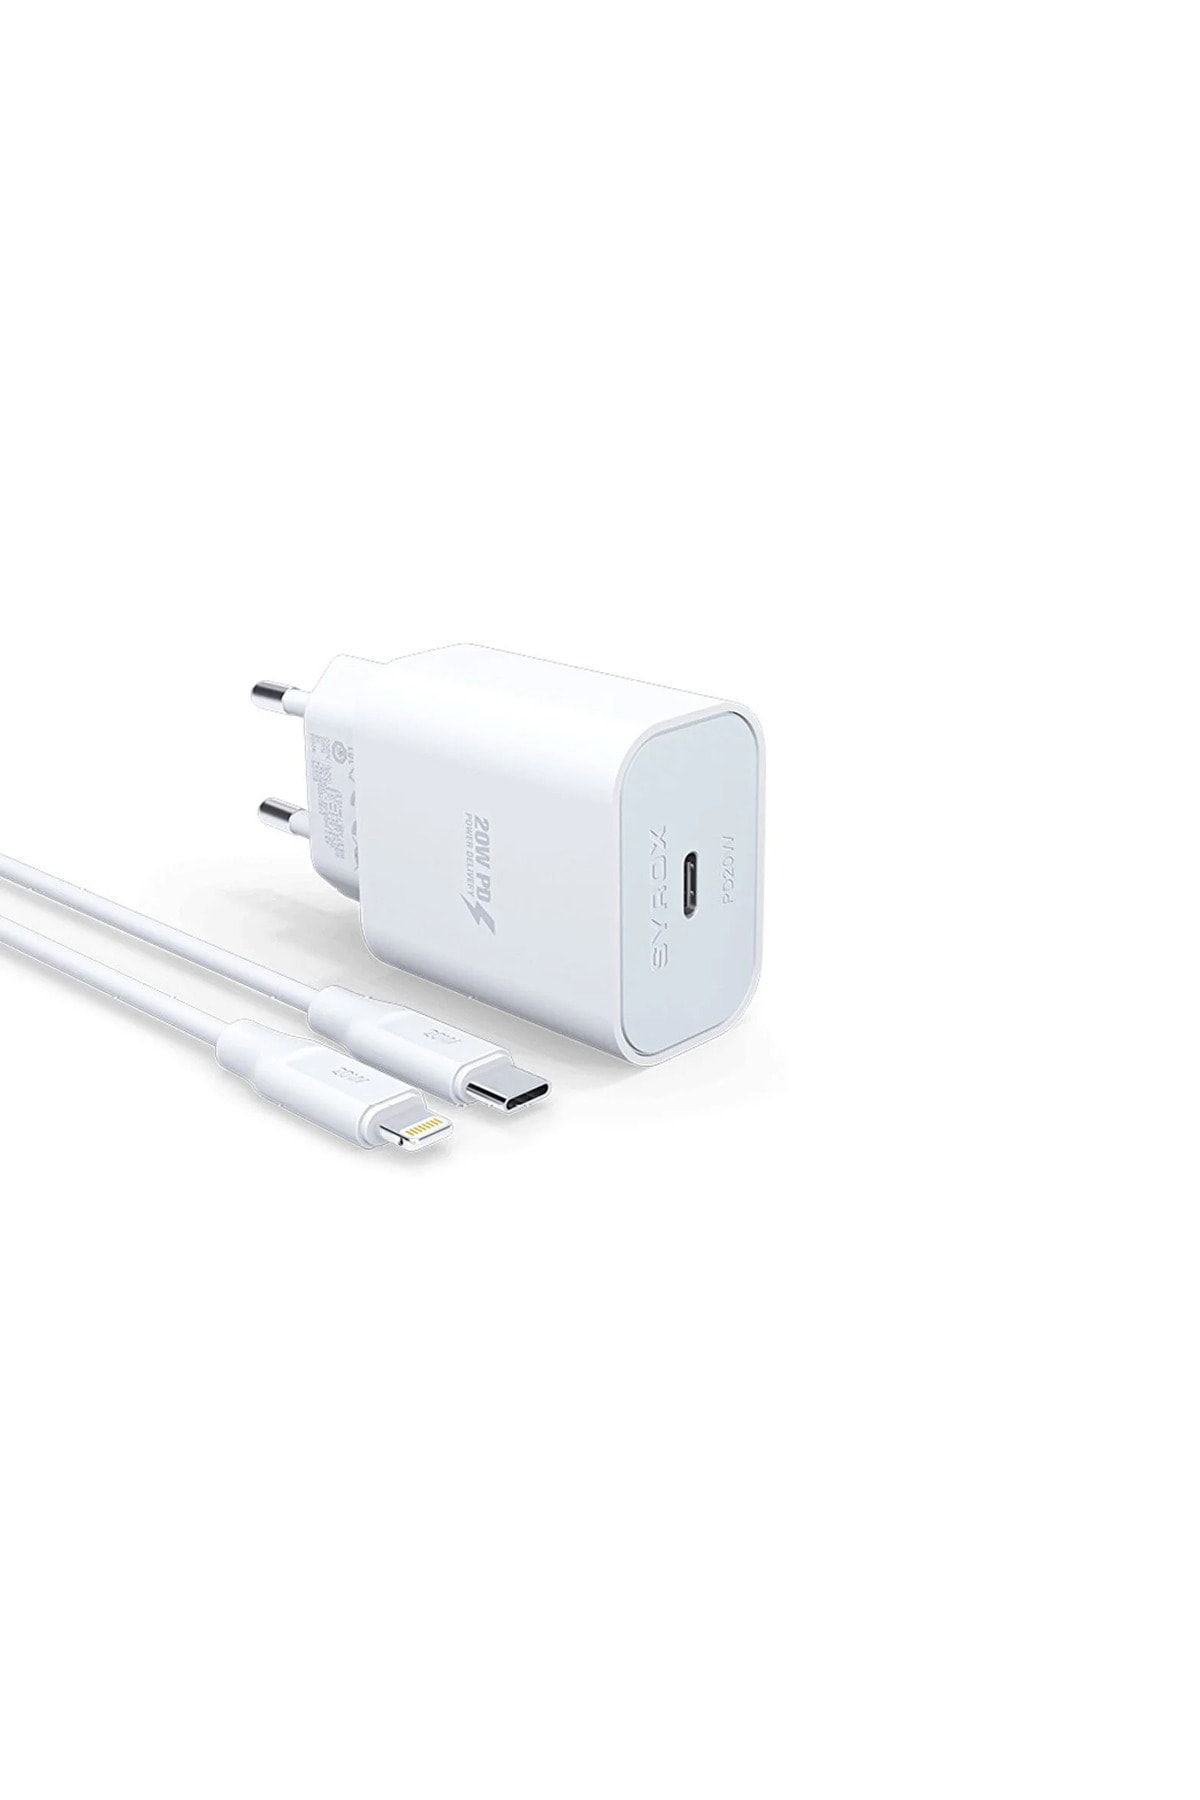 Syrox Apple Iphone 14 Pro Max 5g Uyumlu Hızlı Şarj Cihazı Lightning 20w Şarj Aleti Seti